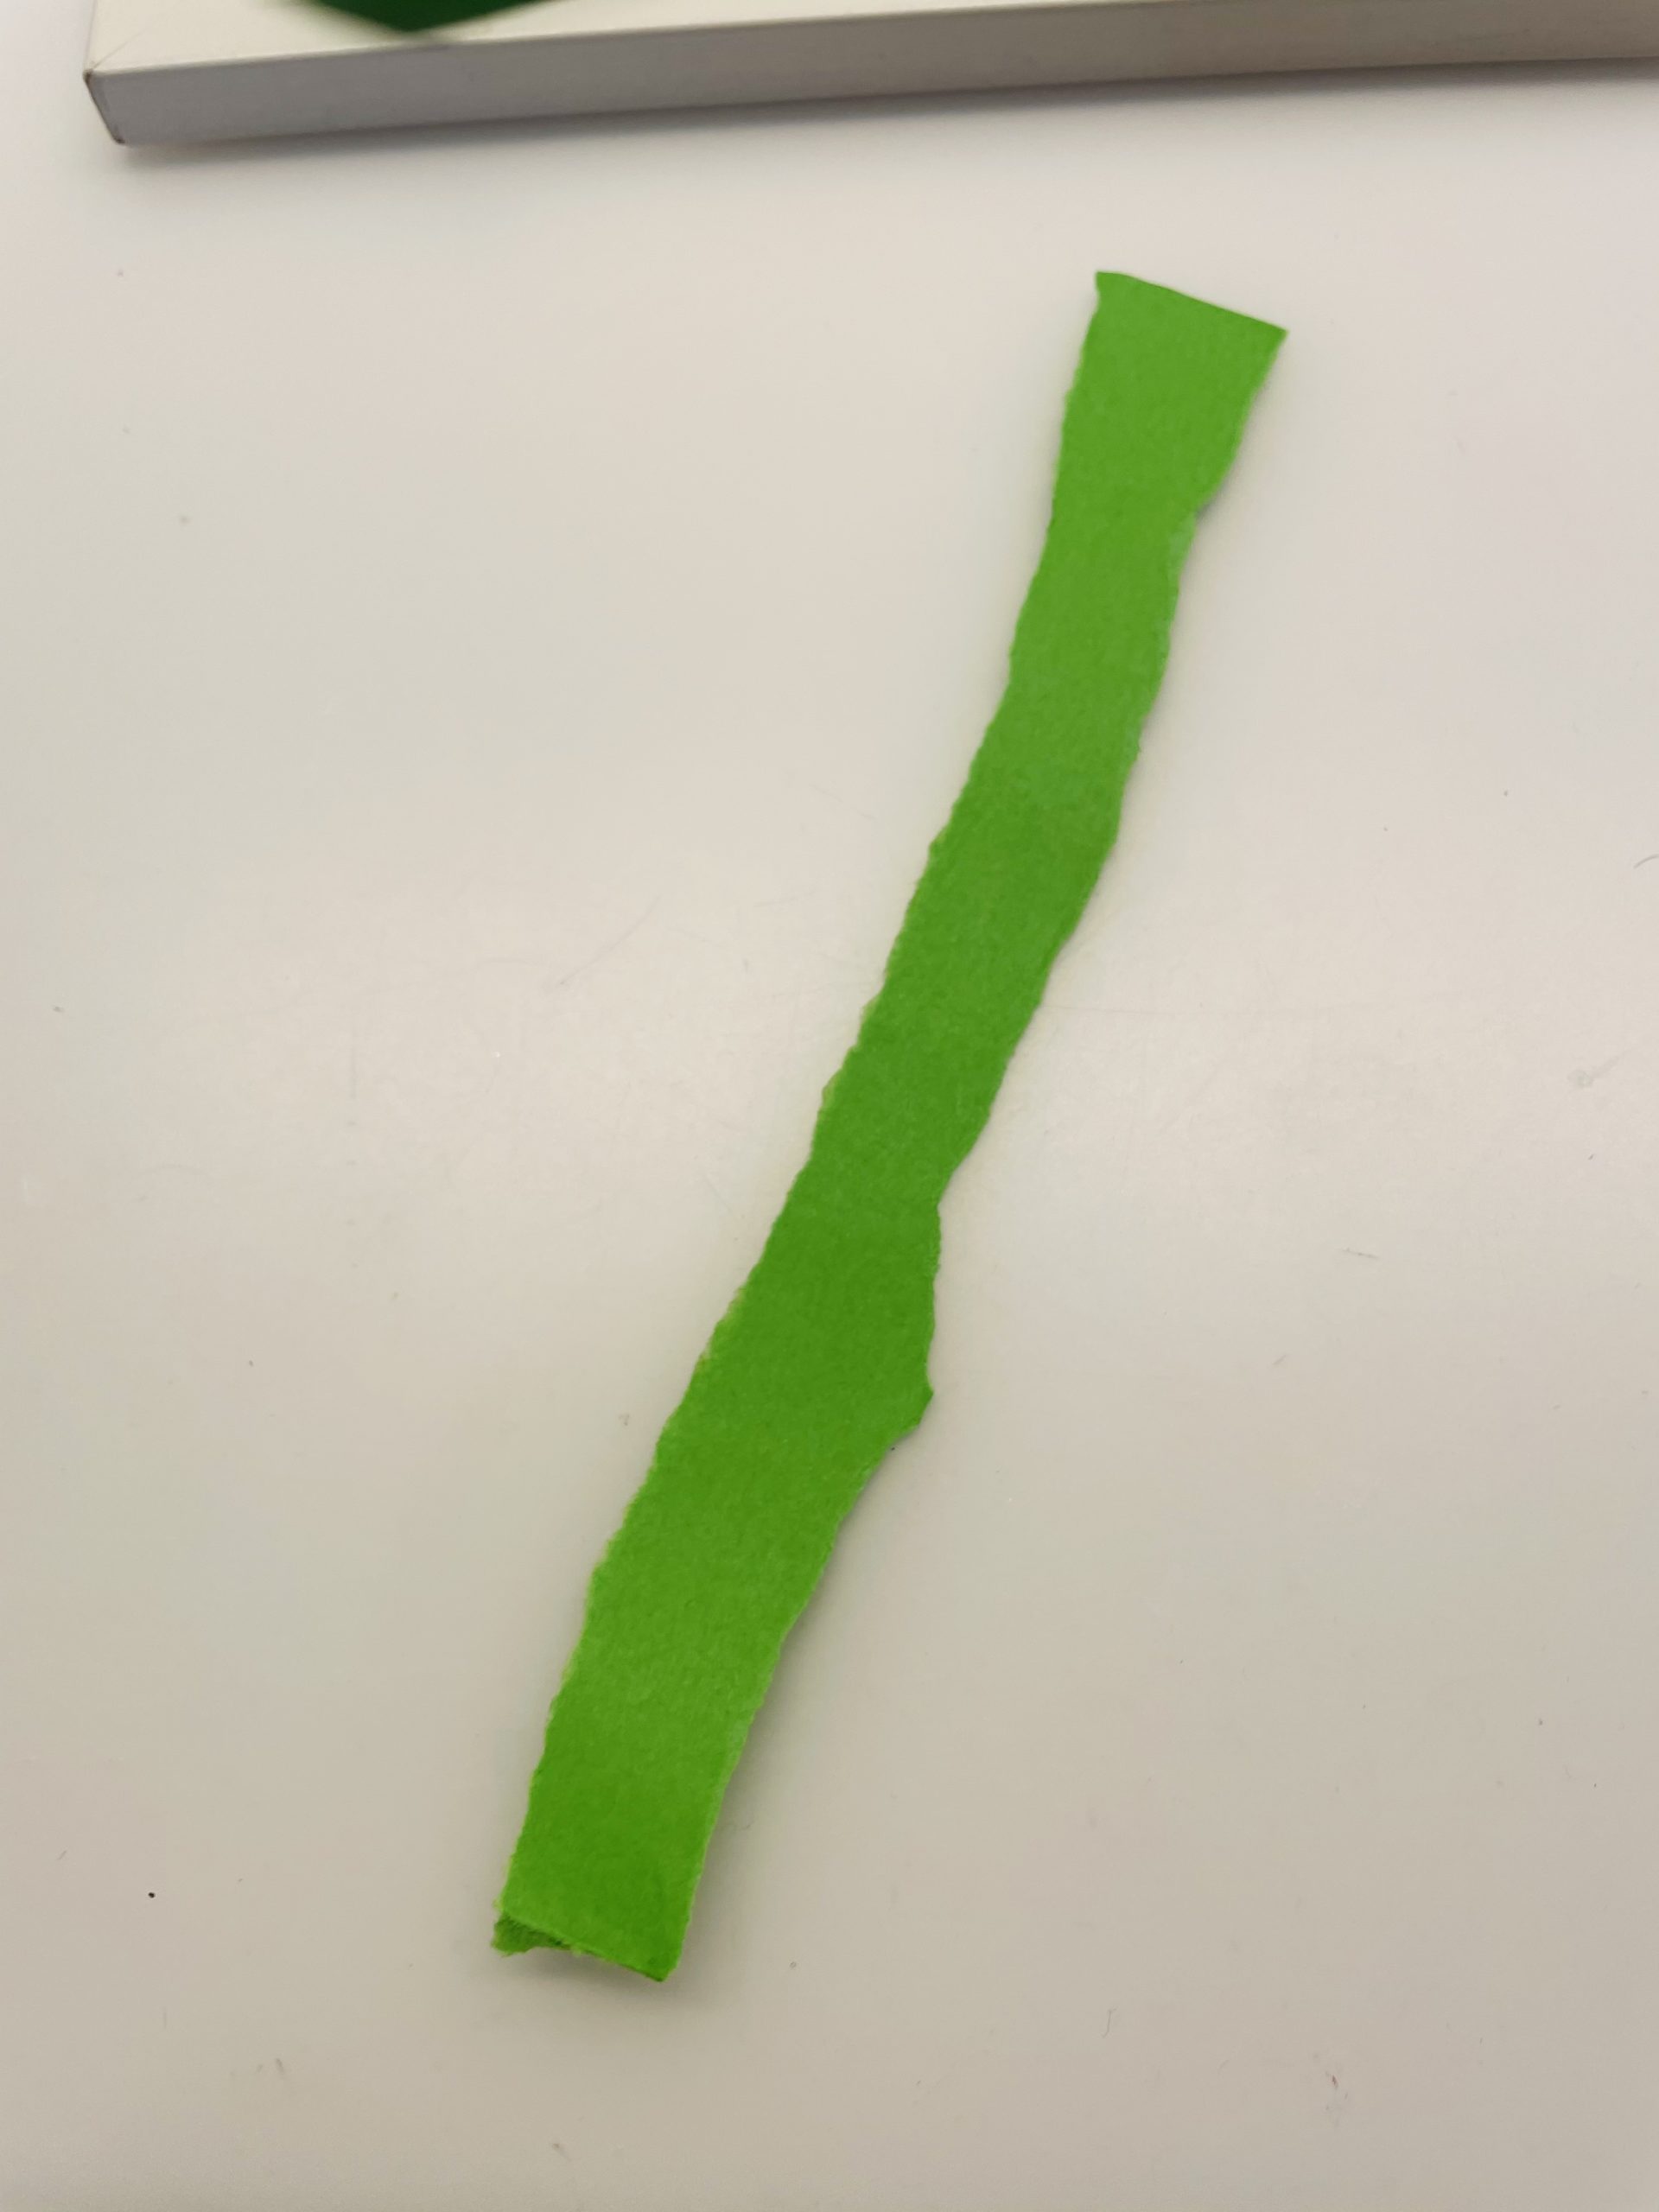 Bild zum Schritt 15 für das Bastel- und DIY-Abenteuer für Kinder: 'Reißt einen weiteren Streifen grünes Papier ab (1cm breit). ...'